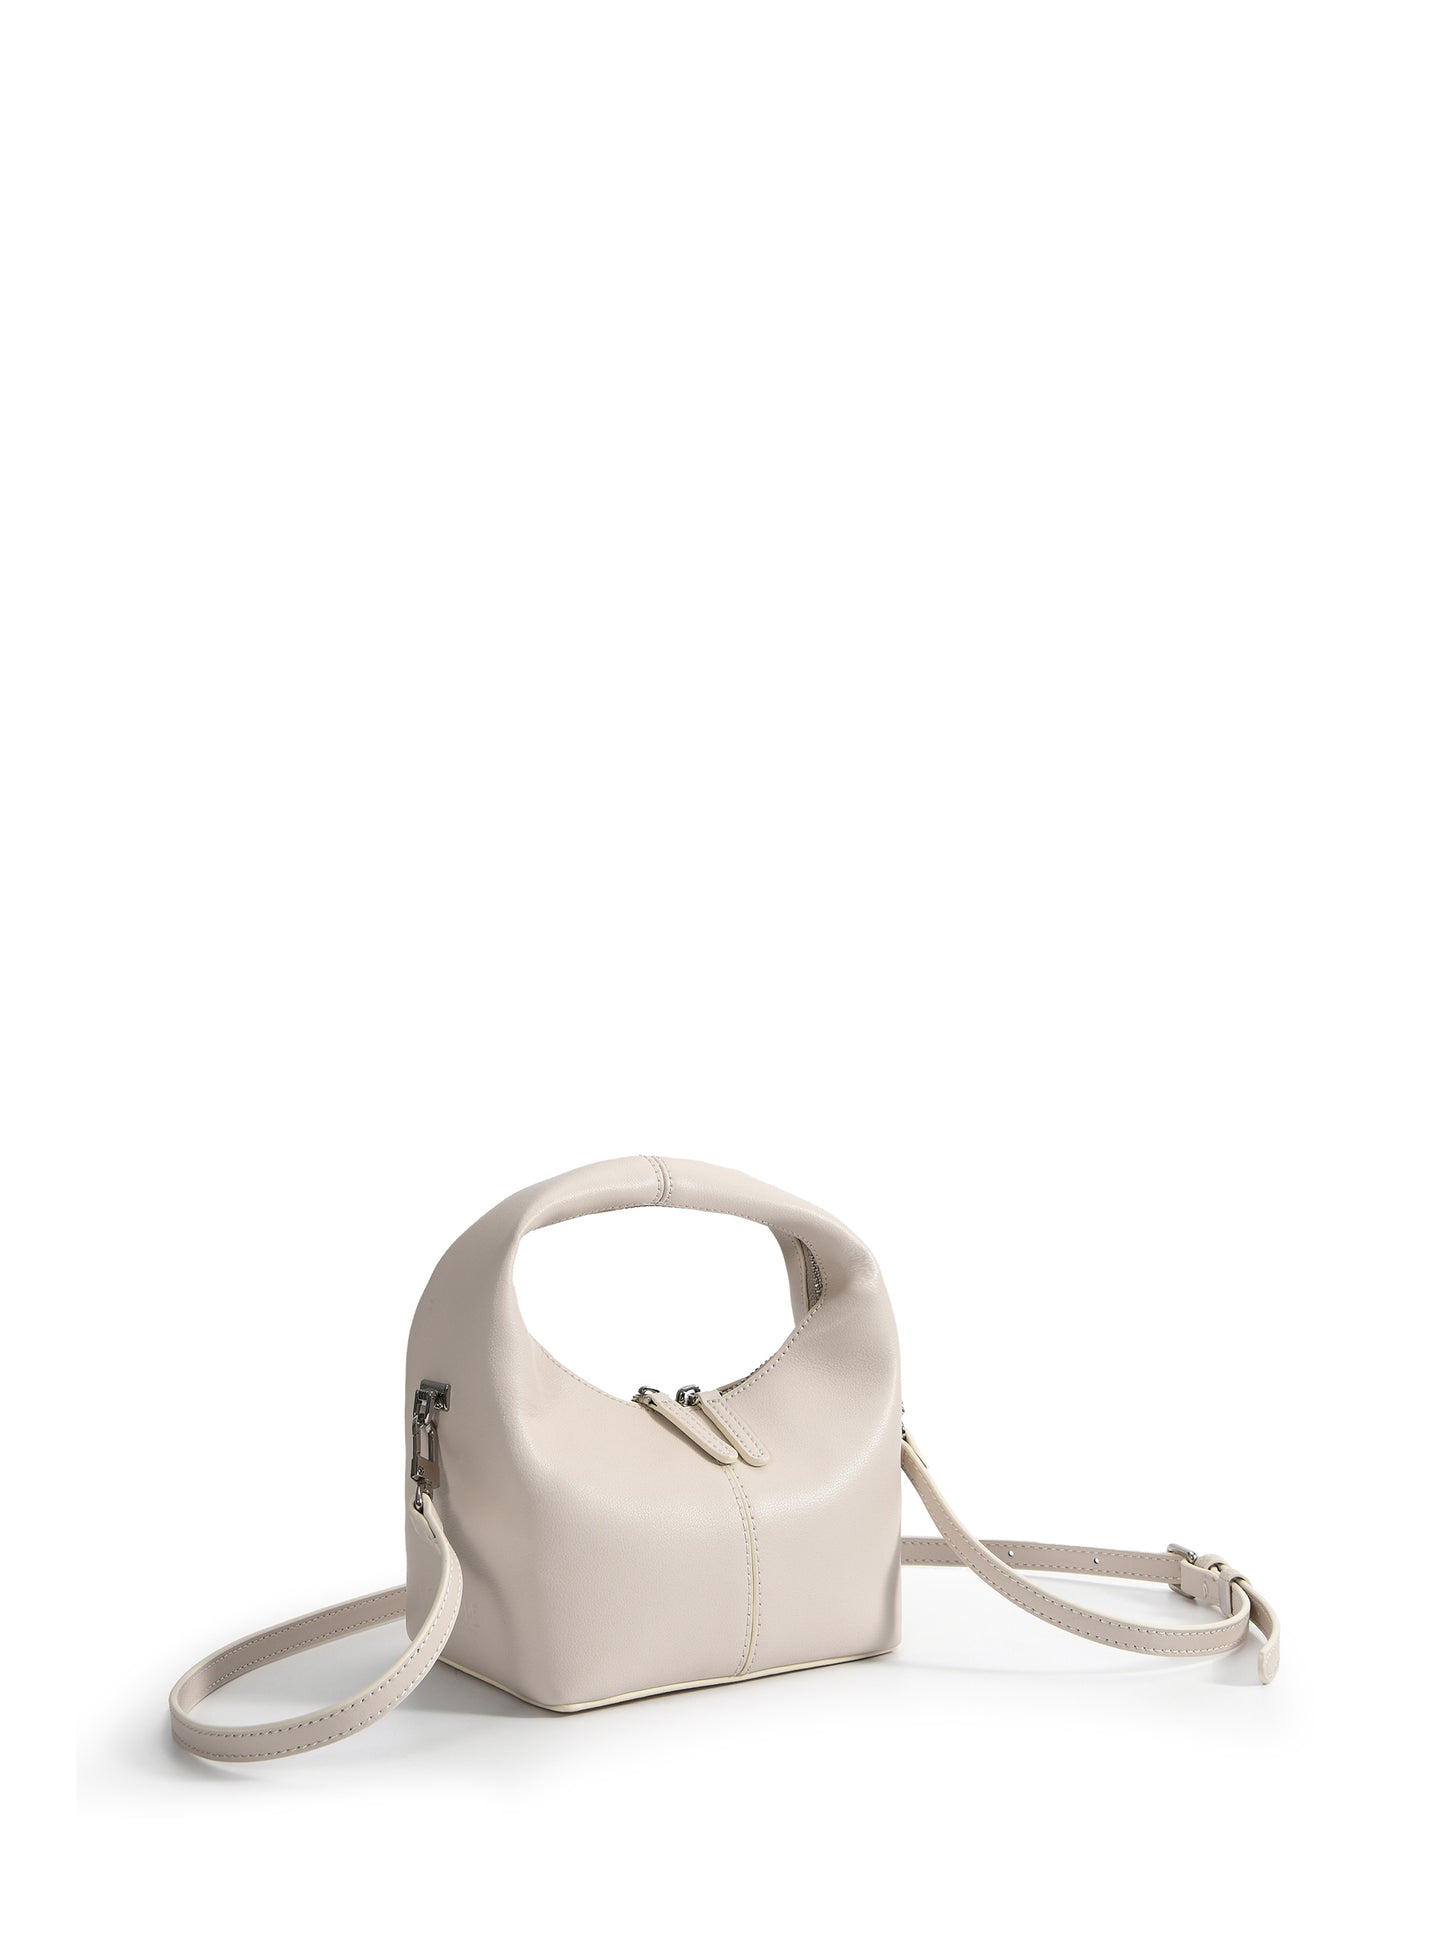 Rebecca Small Cutie Leather Bag, White